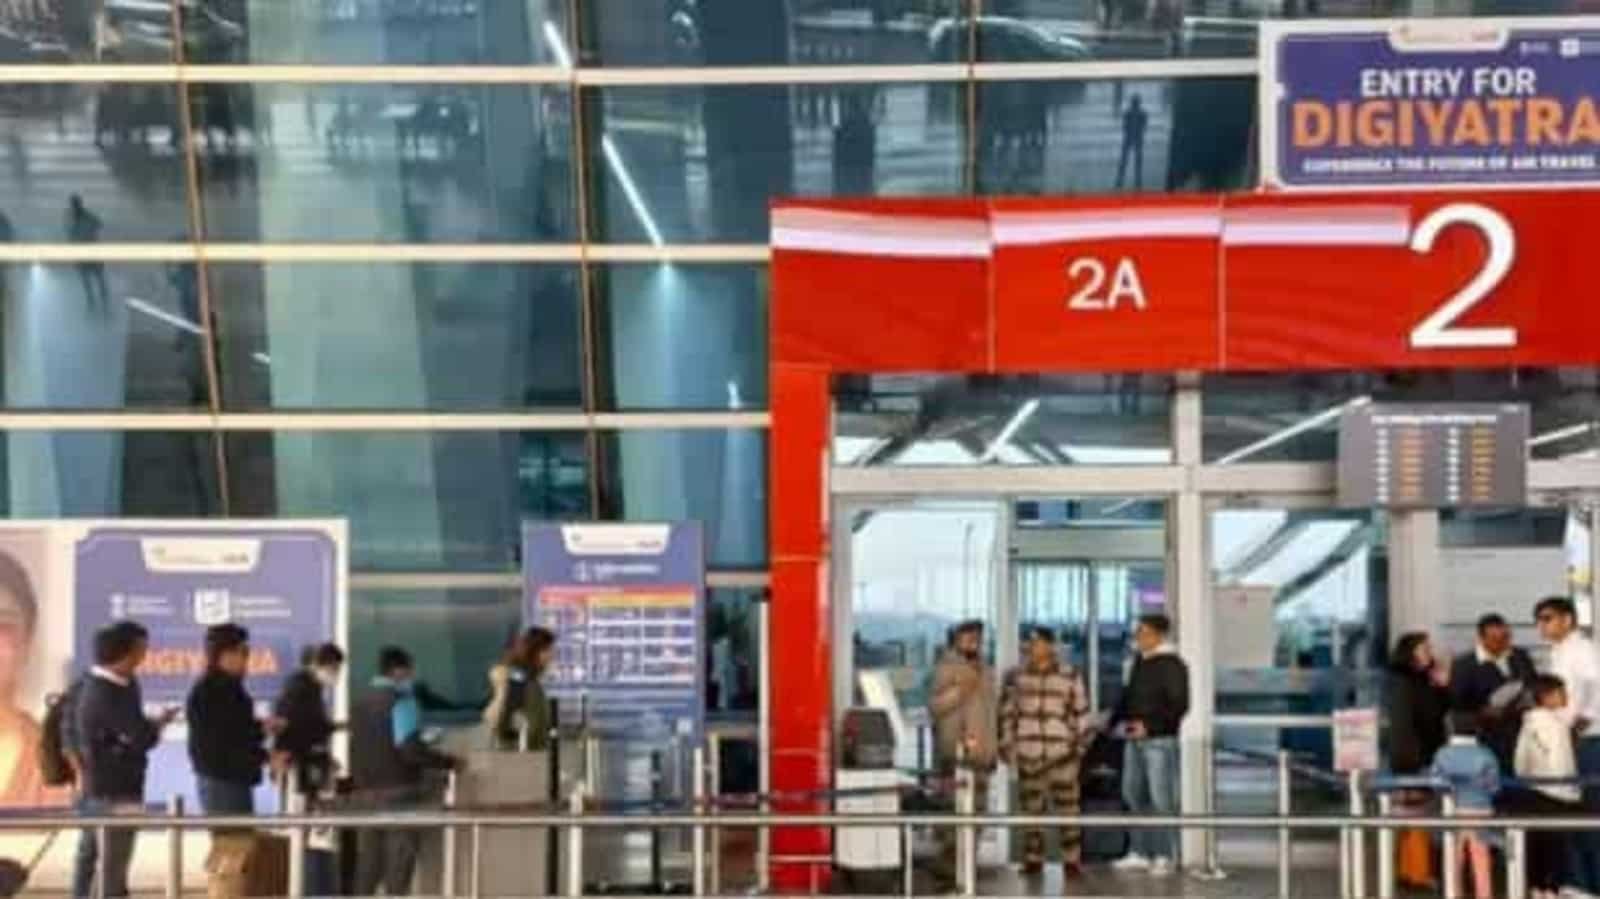 DigiYatra ऐप: हवाईअड्डों पर कतारों से बचने के लिए इन चरणों का पालन करें